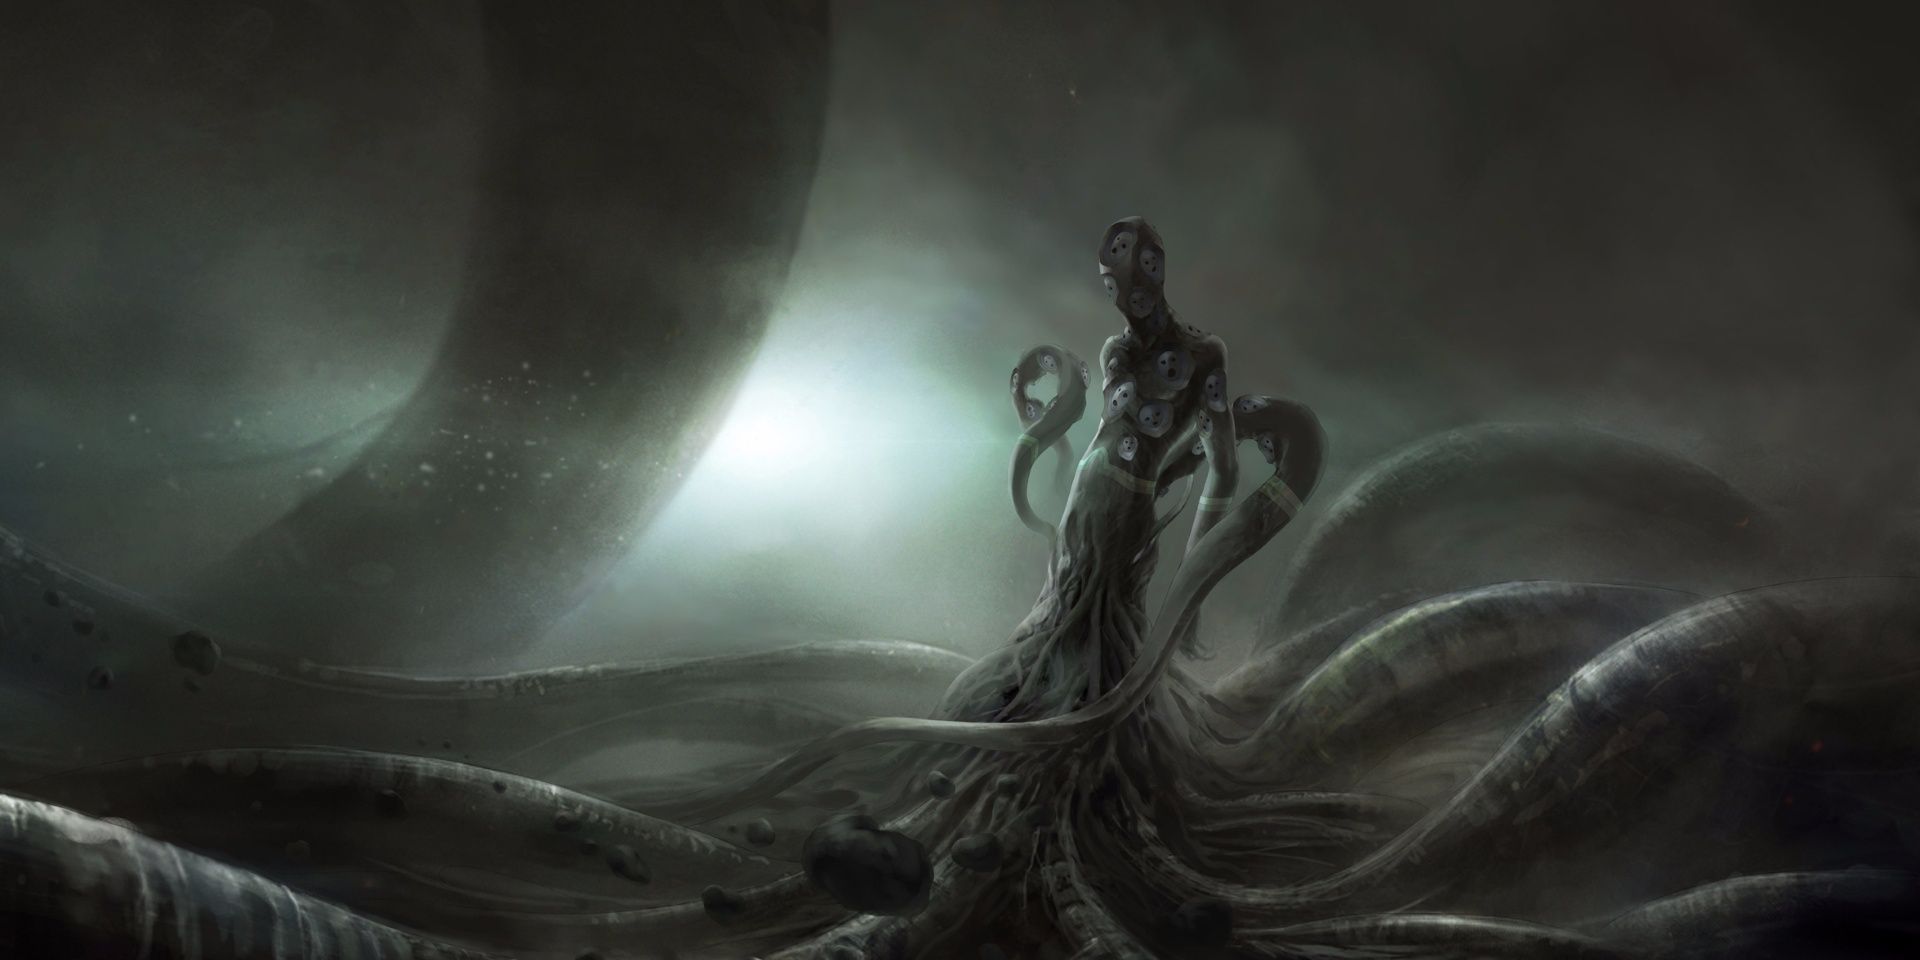 Lovecraftian mythology